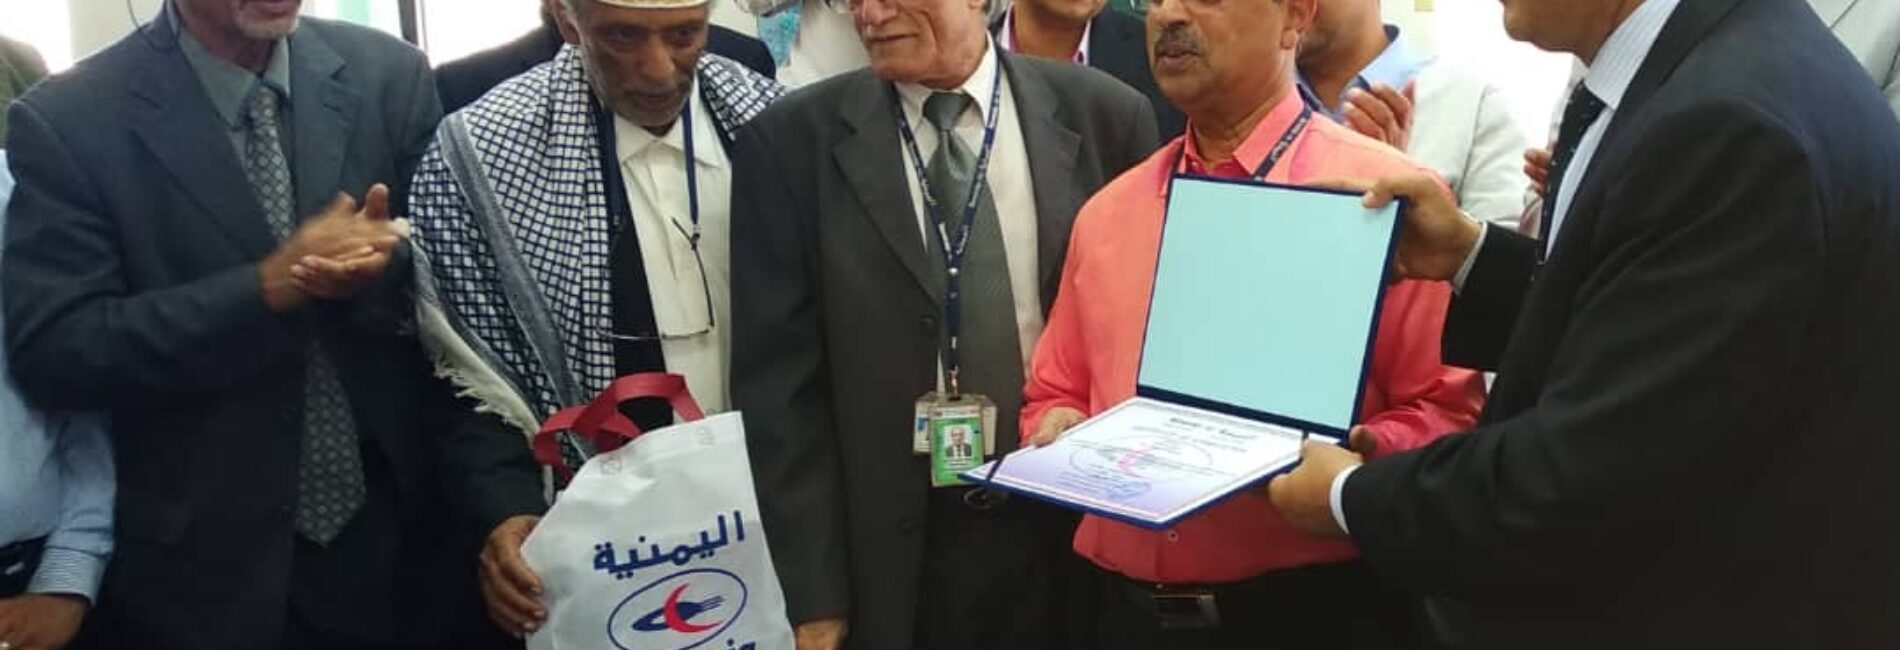 بعد 30 عاما من التفاني في الخطوط الجوية اليمنية